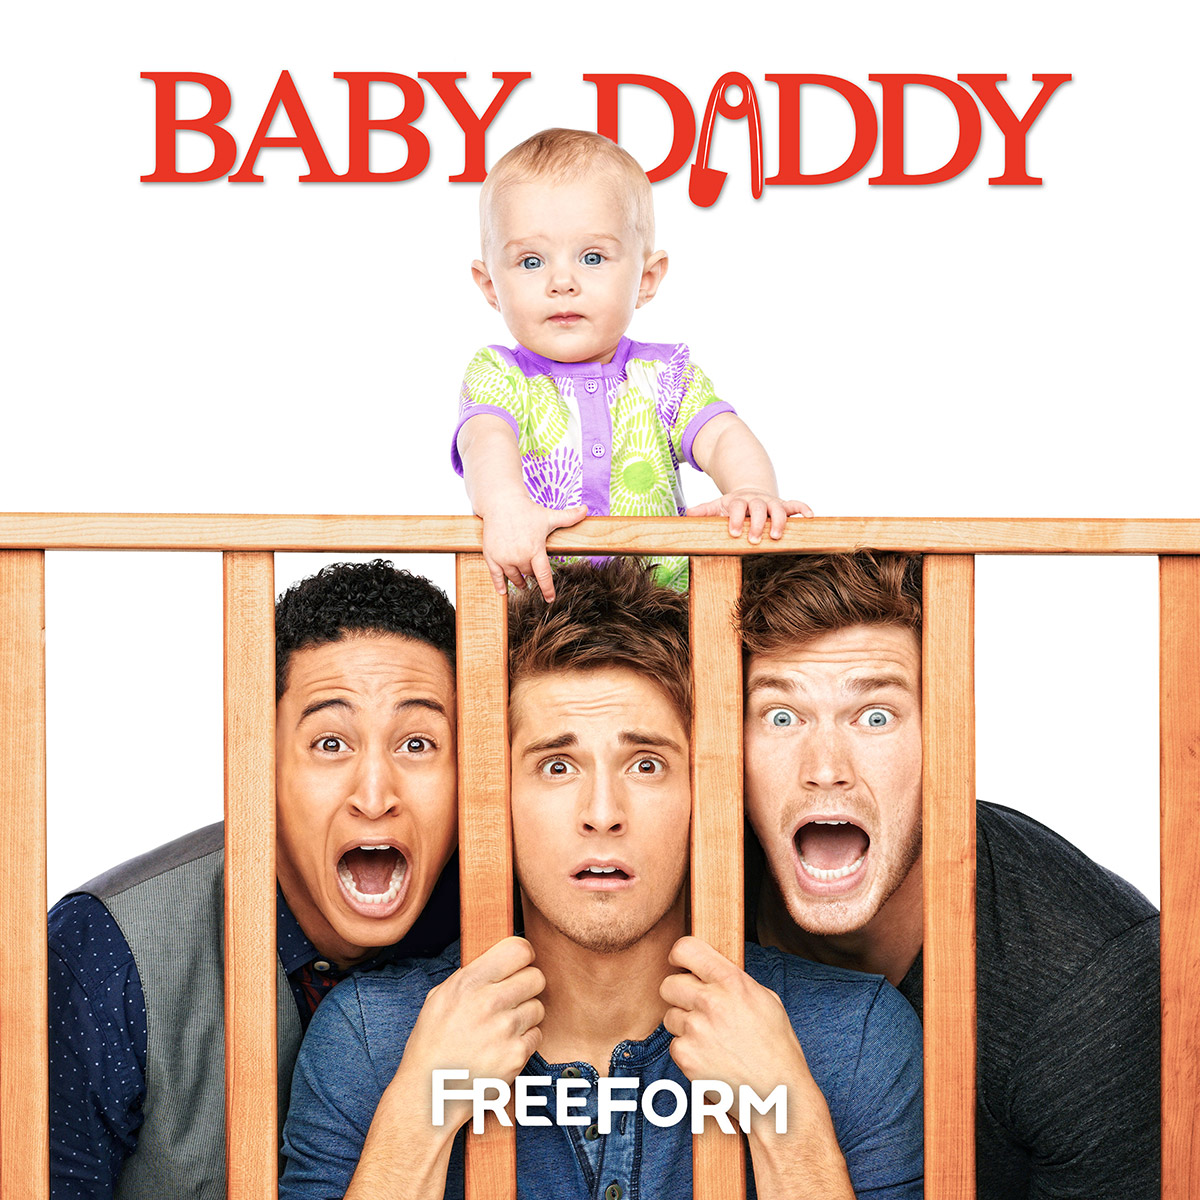 Baby Daddy Freeform Promos - Television Promos1200 x 1200